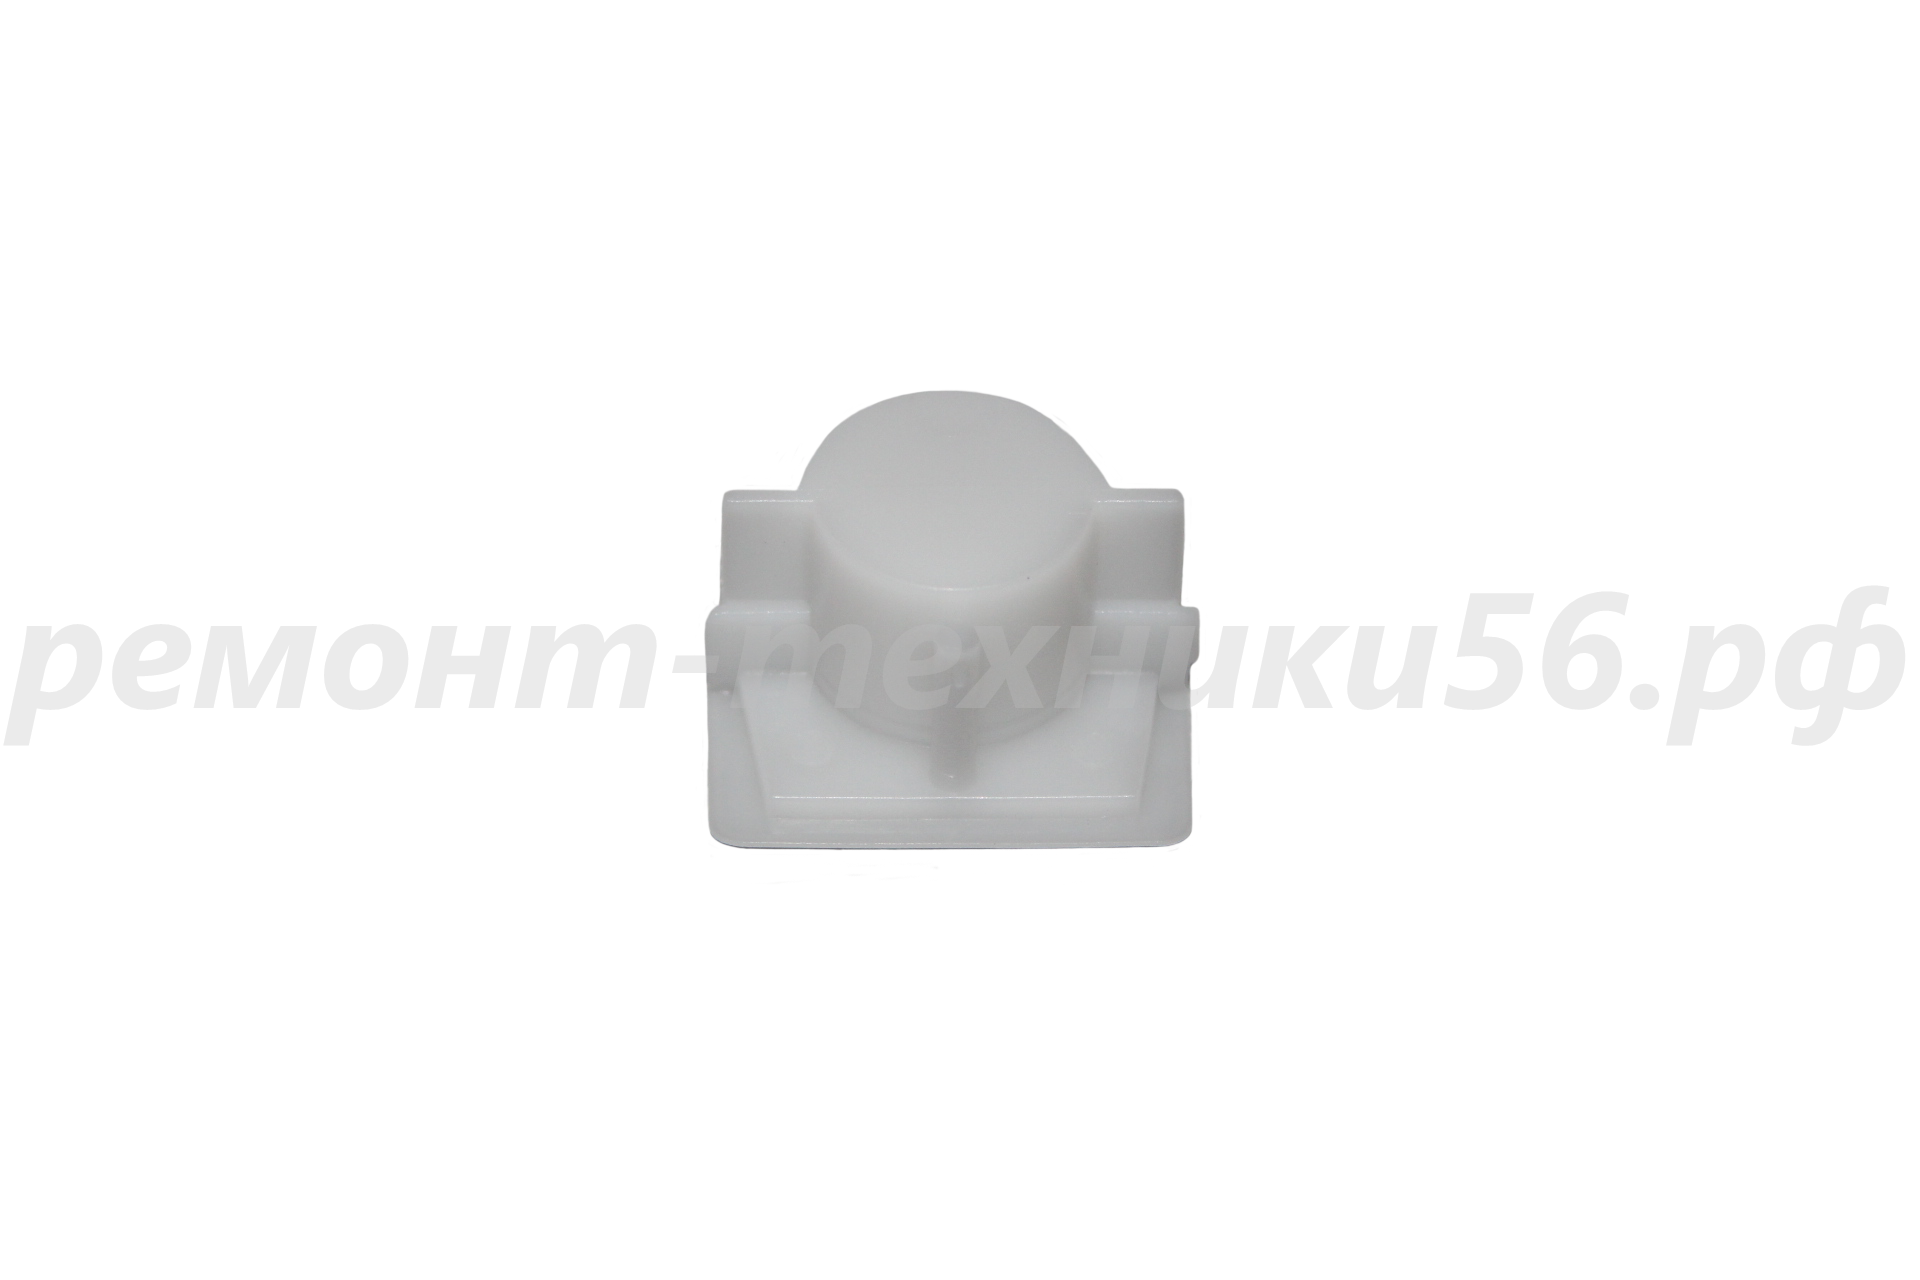 Подшипник скольжения задний Electrolux EHAW - 6515 (white) по лучшей цене фото4